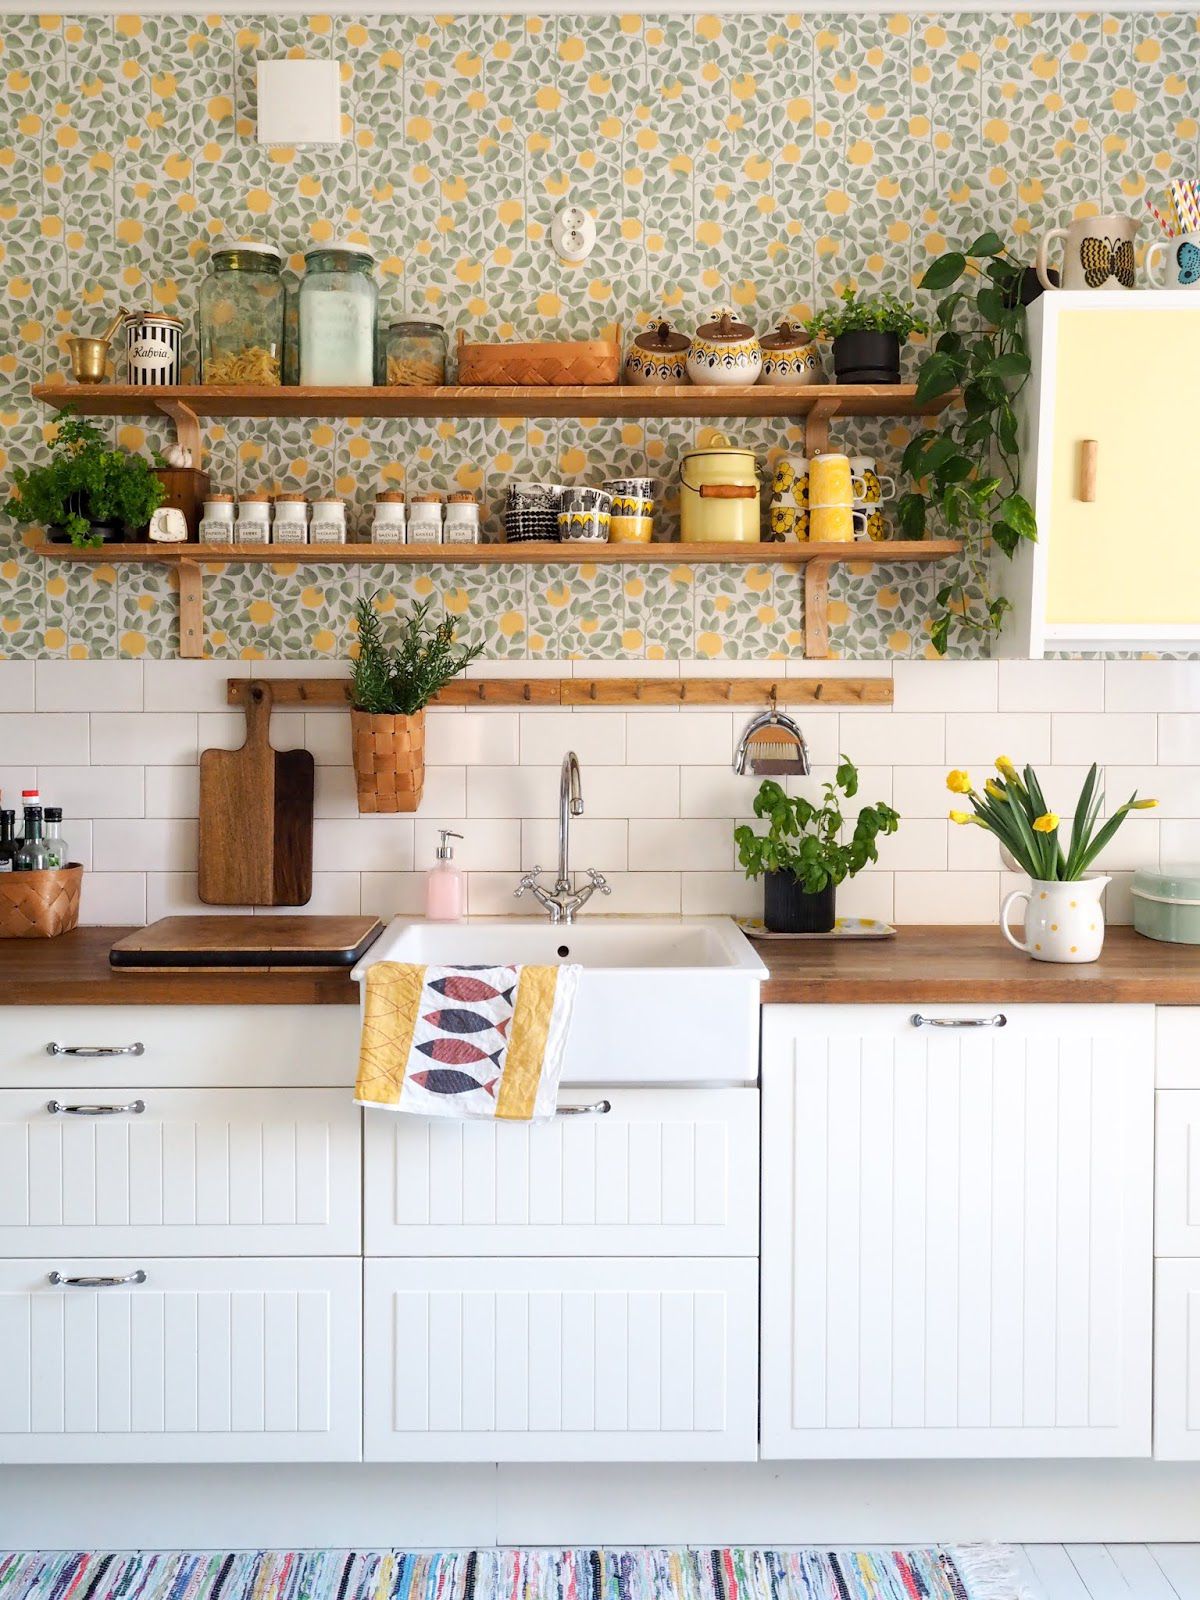 Trang trí nhà bếp bằng giấy dán tường dễ dàng, đơn giản và tiết kiệm rõ ràng so với dùng gạch ốp - Ảnh 11.